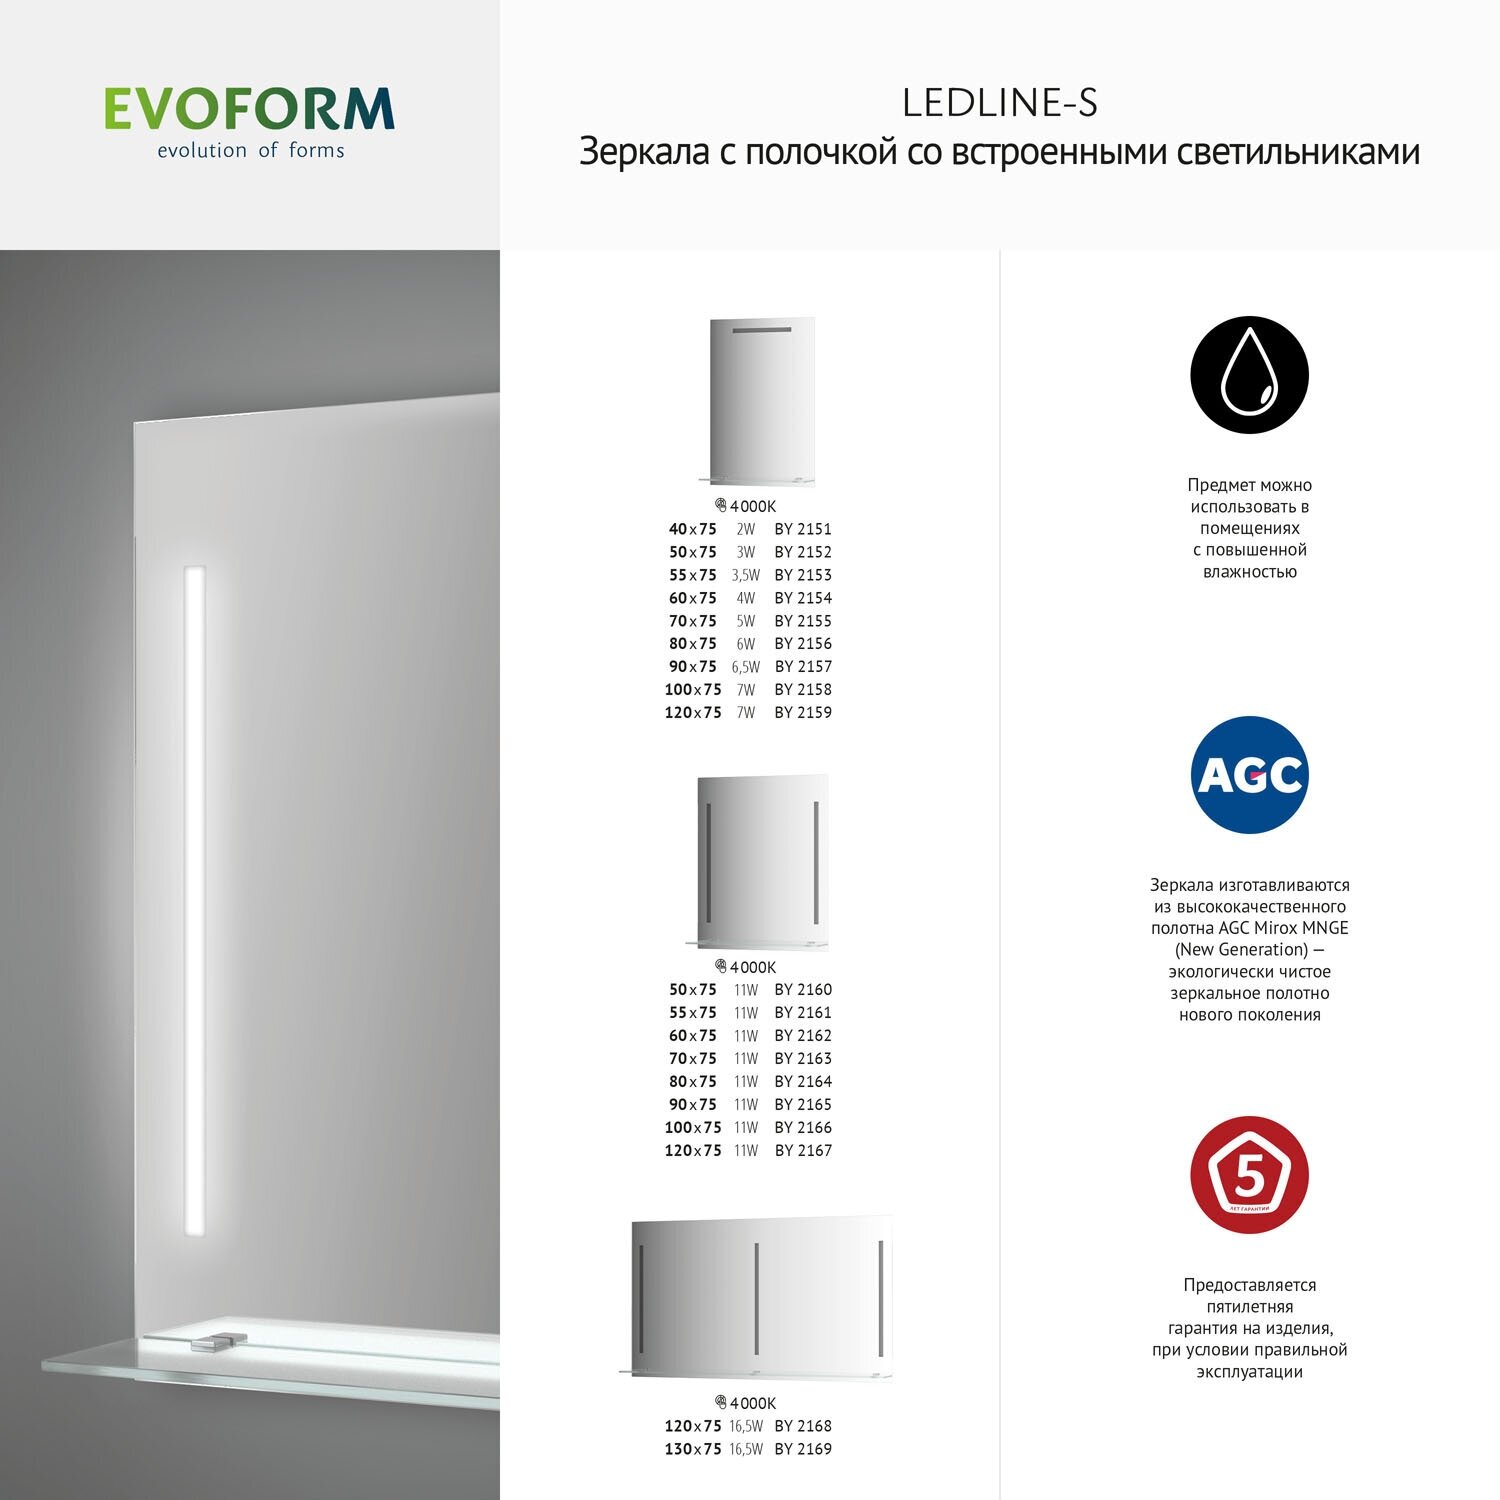 Зеркало настенное Прямоугольное c полочкой и 3-мя встроенными LED-светильниками Ledline-S EVOFORM 130x75 см, BY 2169 - фотография № 5